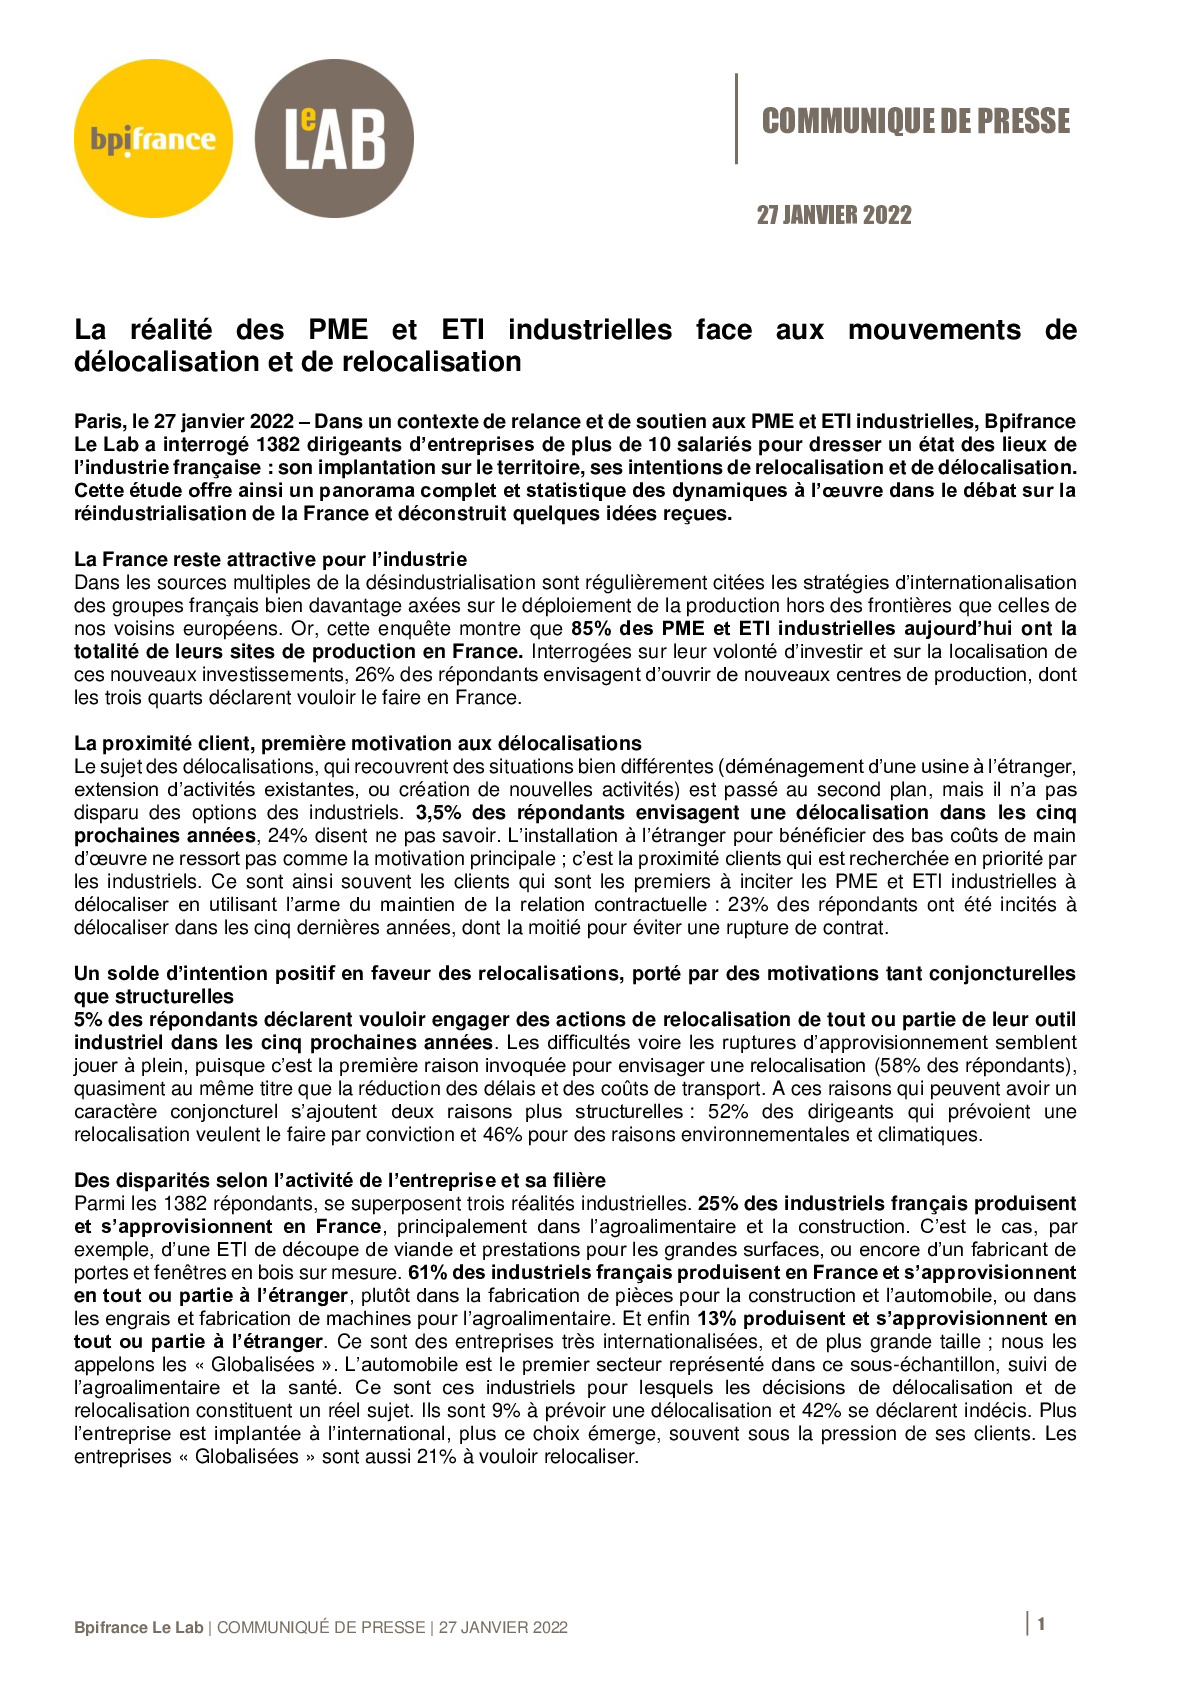 2022 01 27 – CP Bpifrance Le Lab – La realite des PME et ETI industrielles face aux mouvements de delocalisation et de relocalisation-pdf